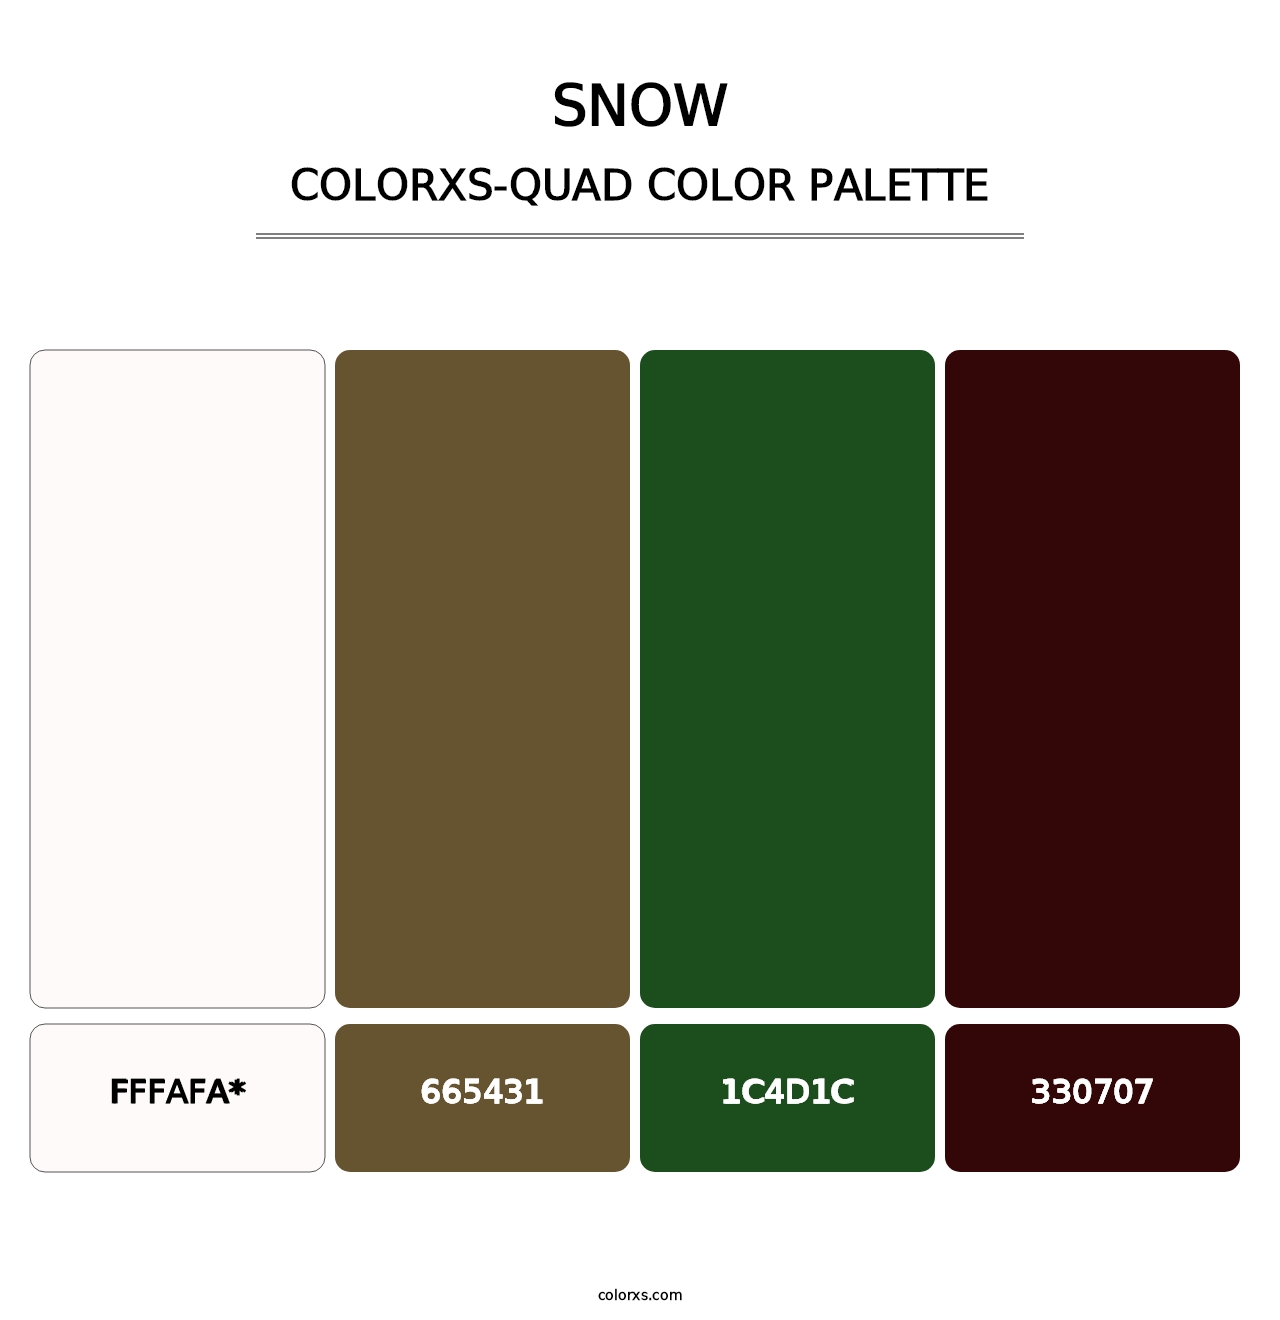 Snow - Colorxs Quad Palette